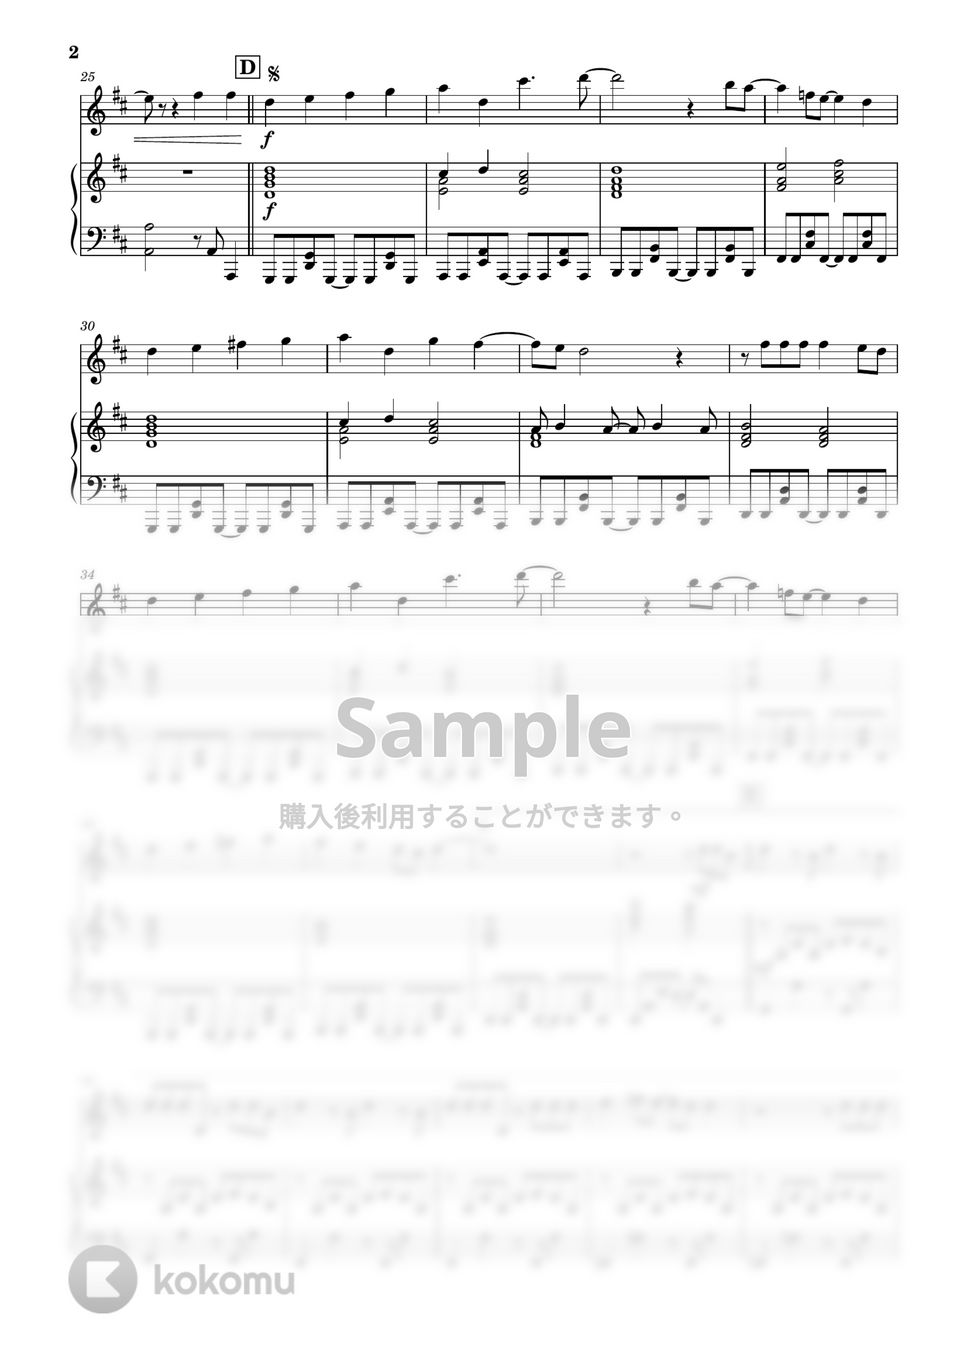 Vaundy - 怪獣の花唄 (フルート&ピアノ伴奏) by PiaFlu